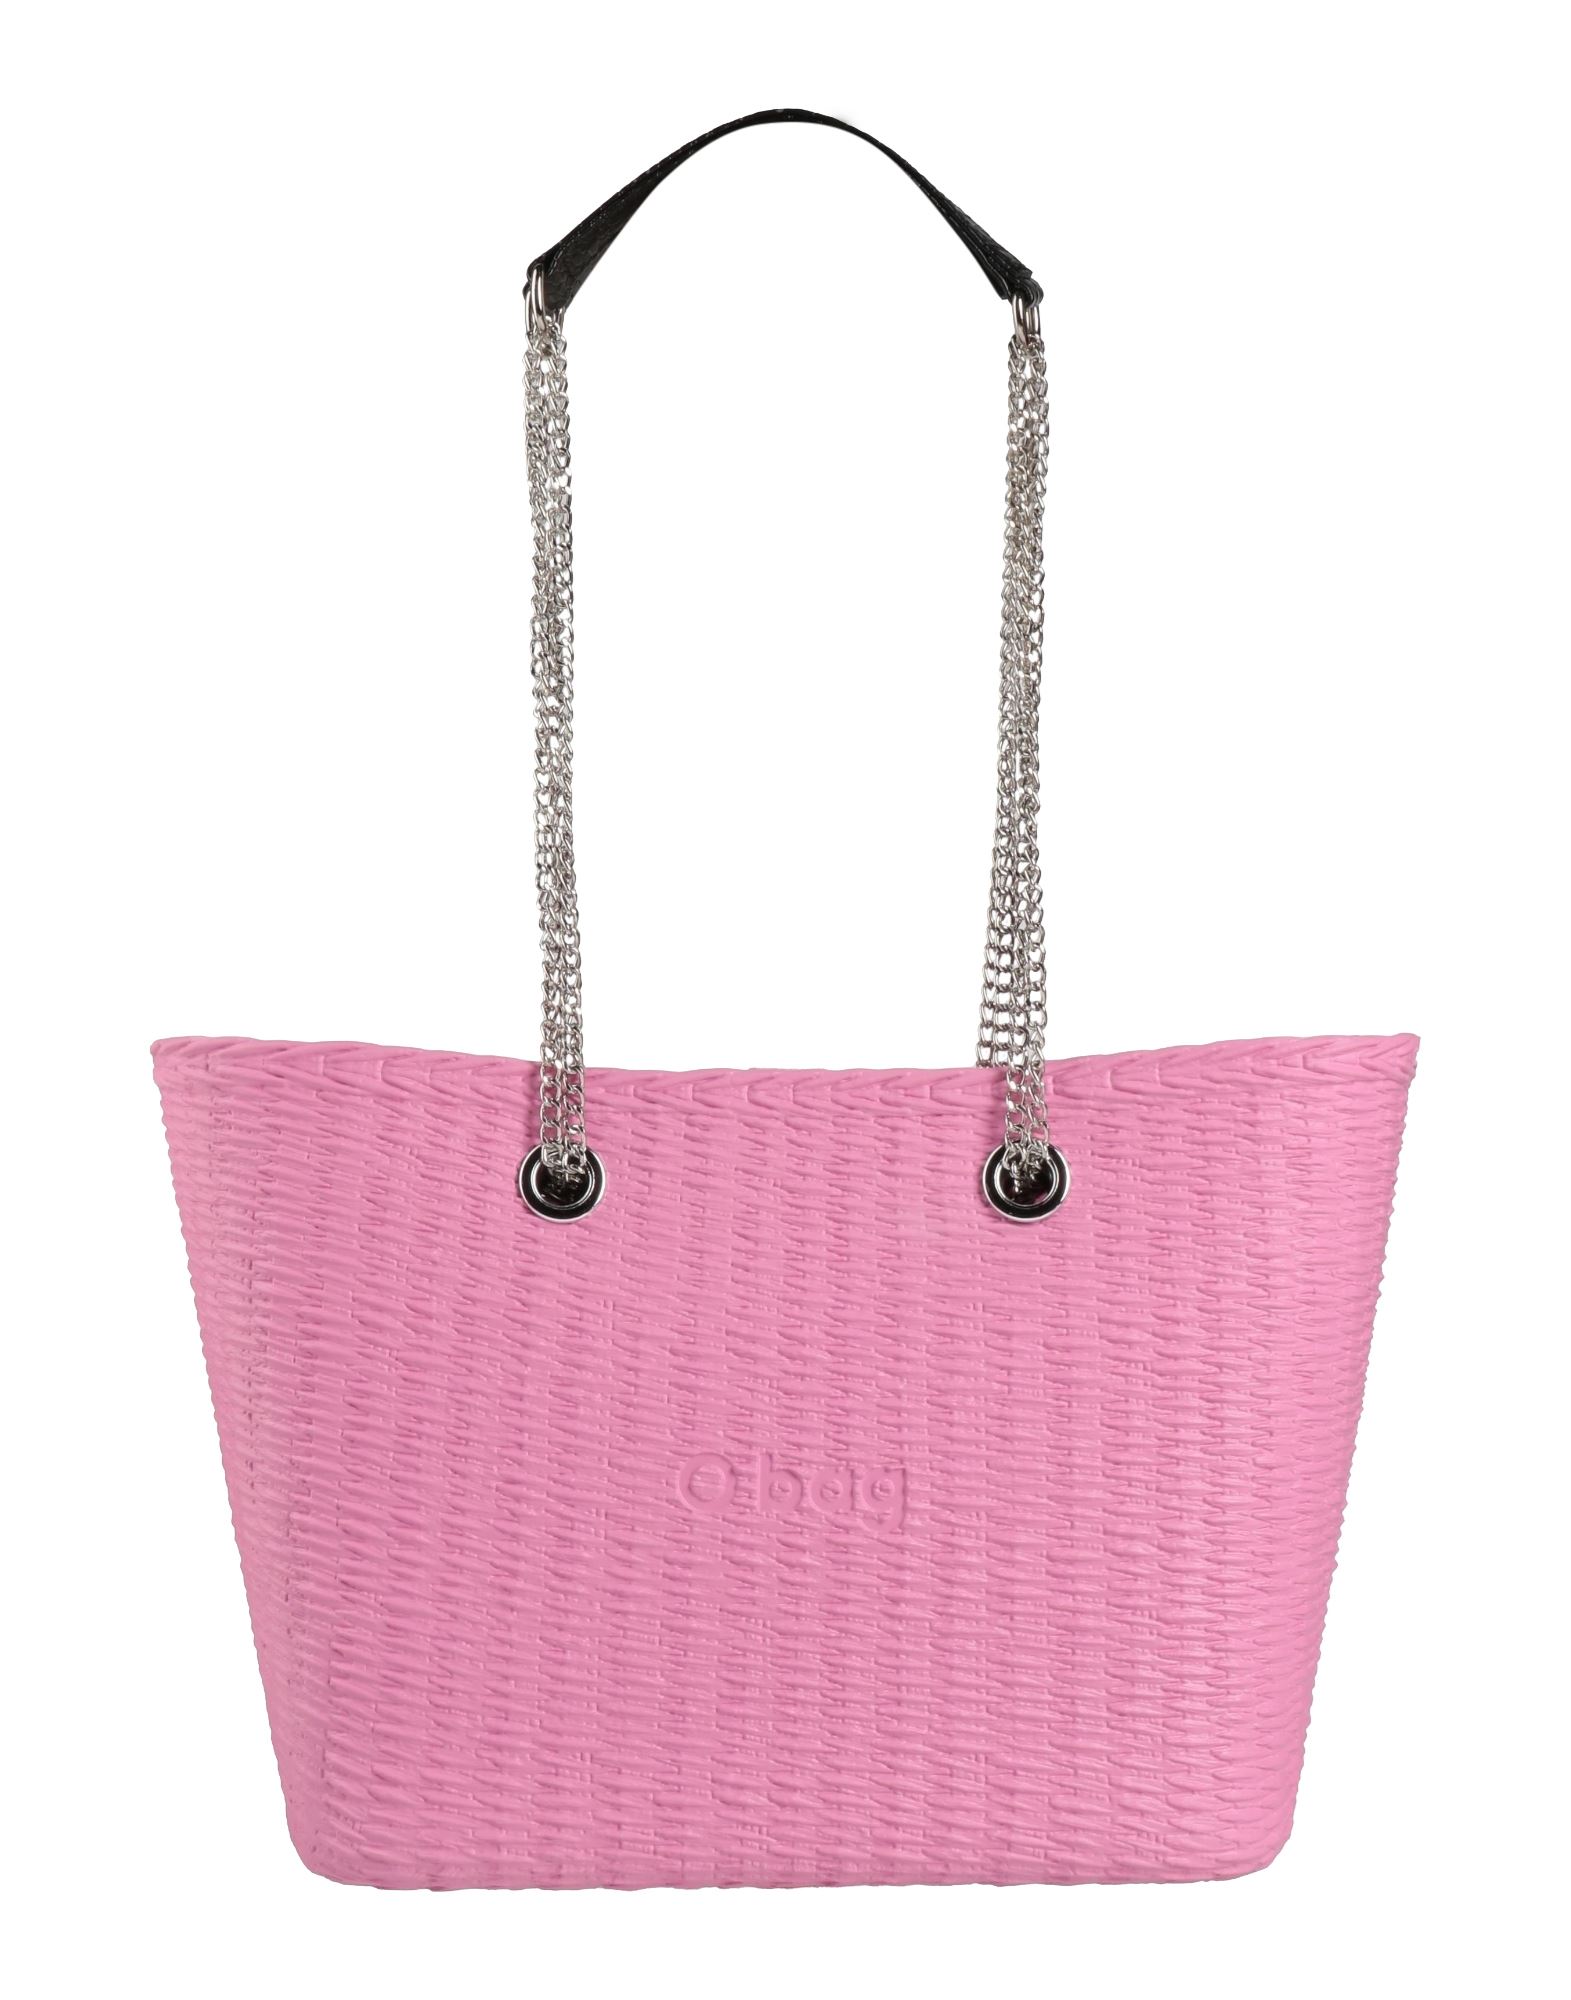 O Bag Handbags In Pink